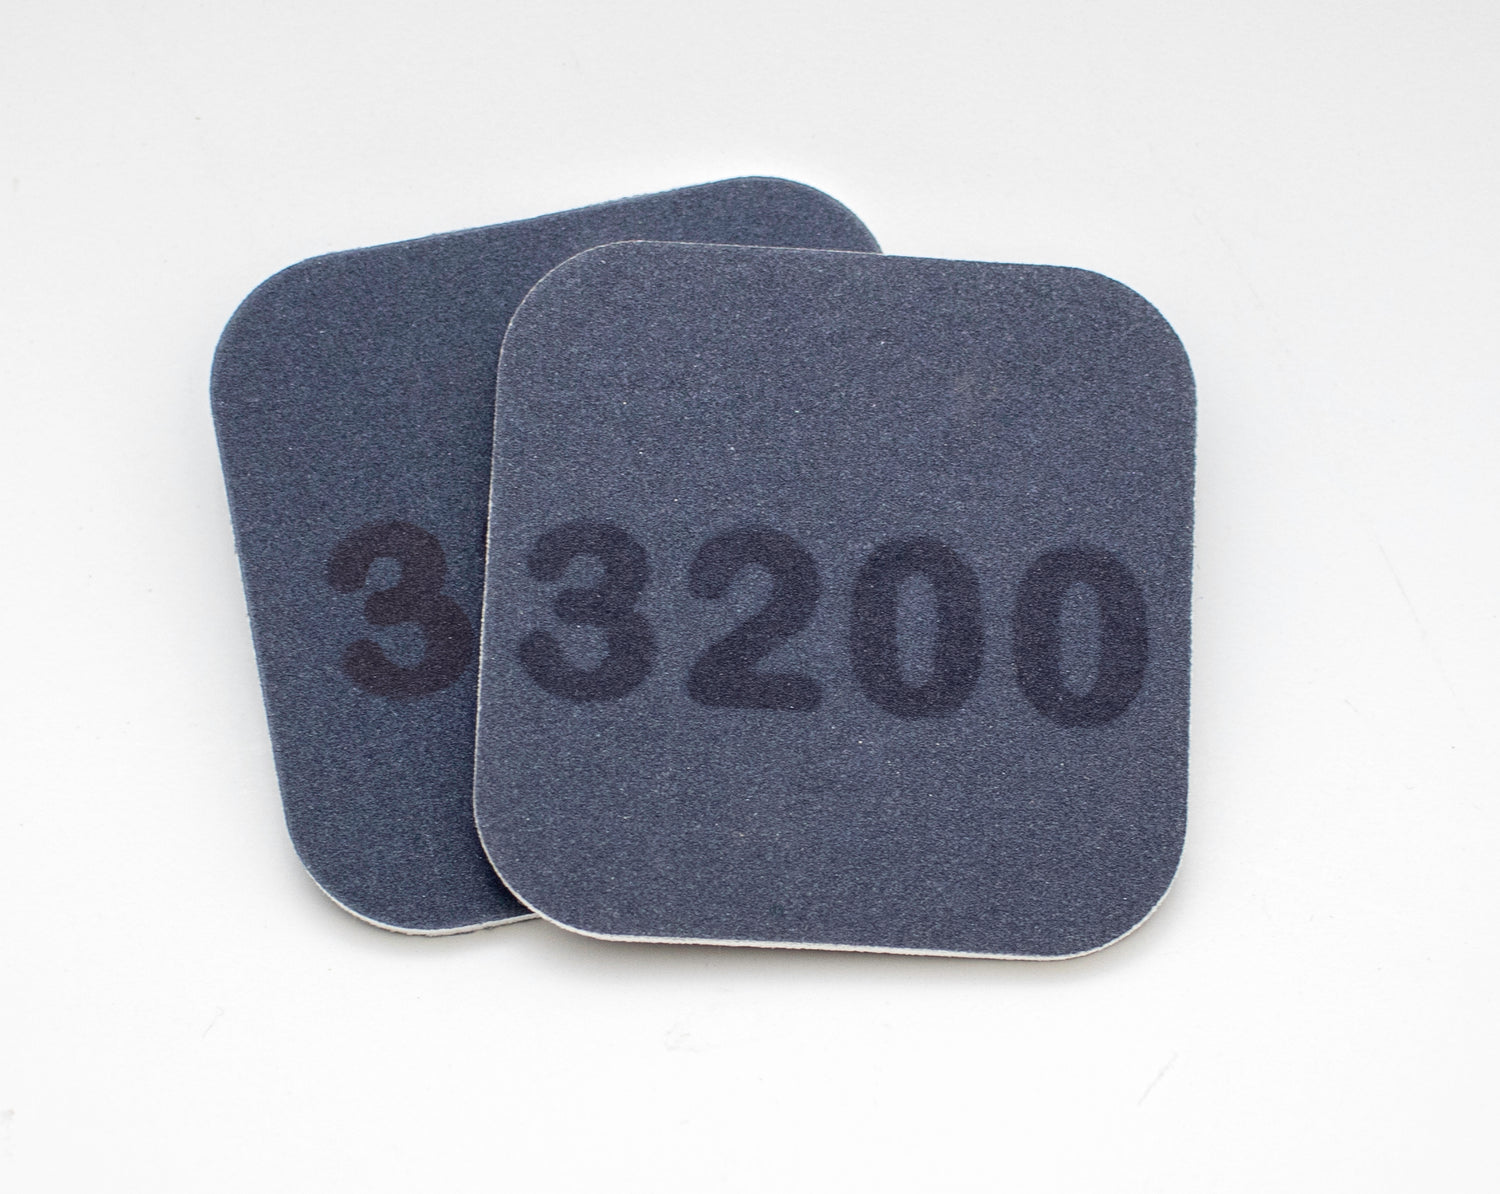 Finishing Material: Micro Mesh 2x2 foam pads